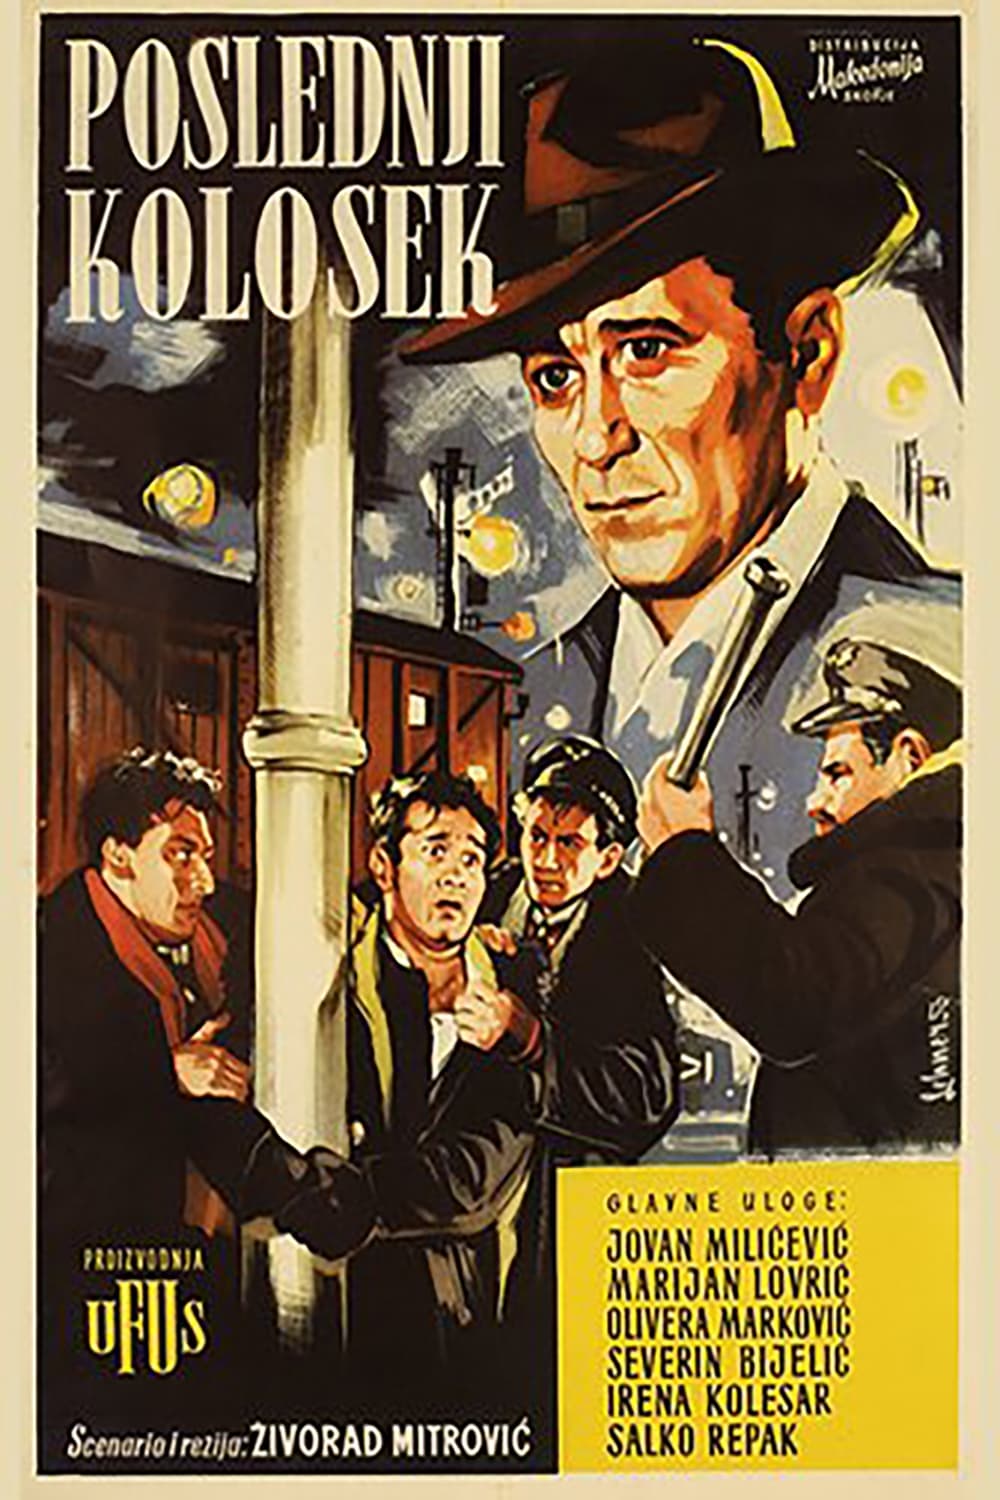 The Last Railway (1956)